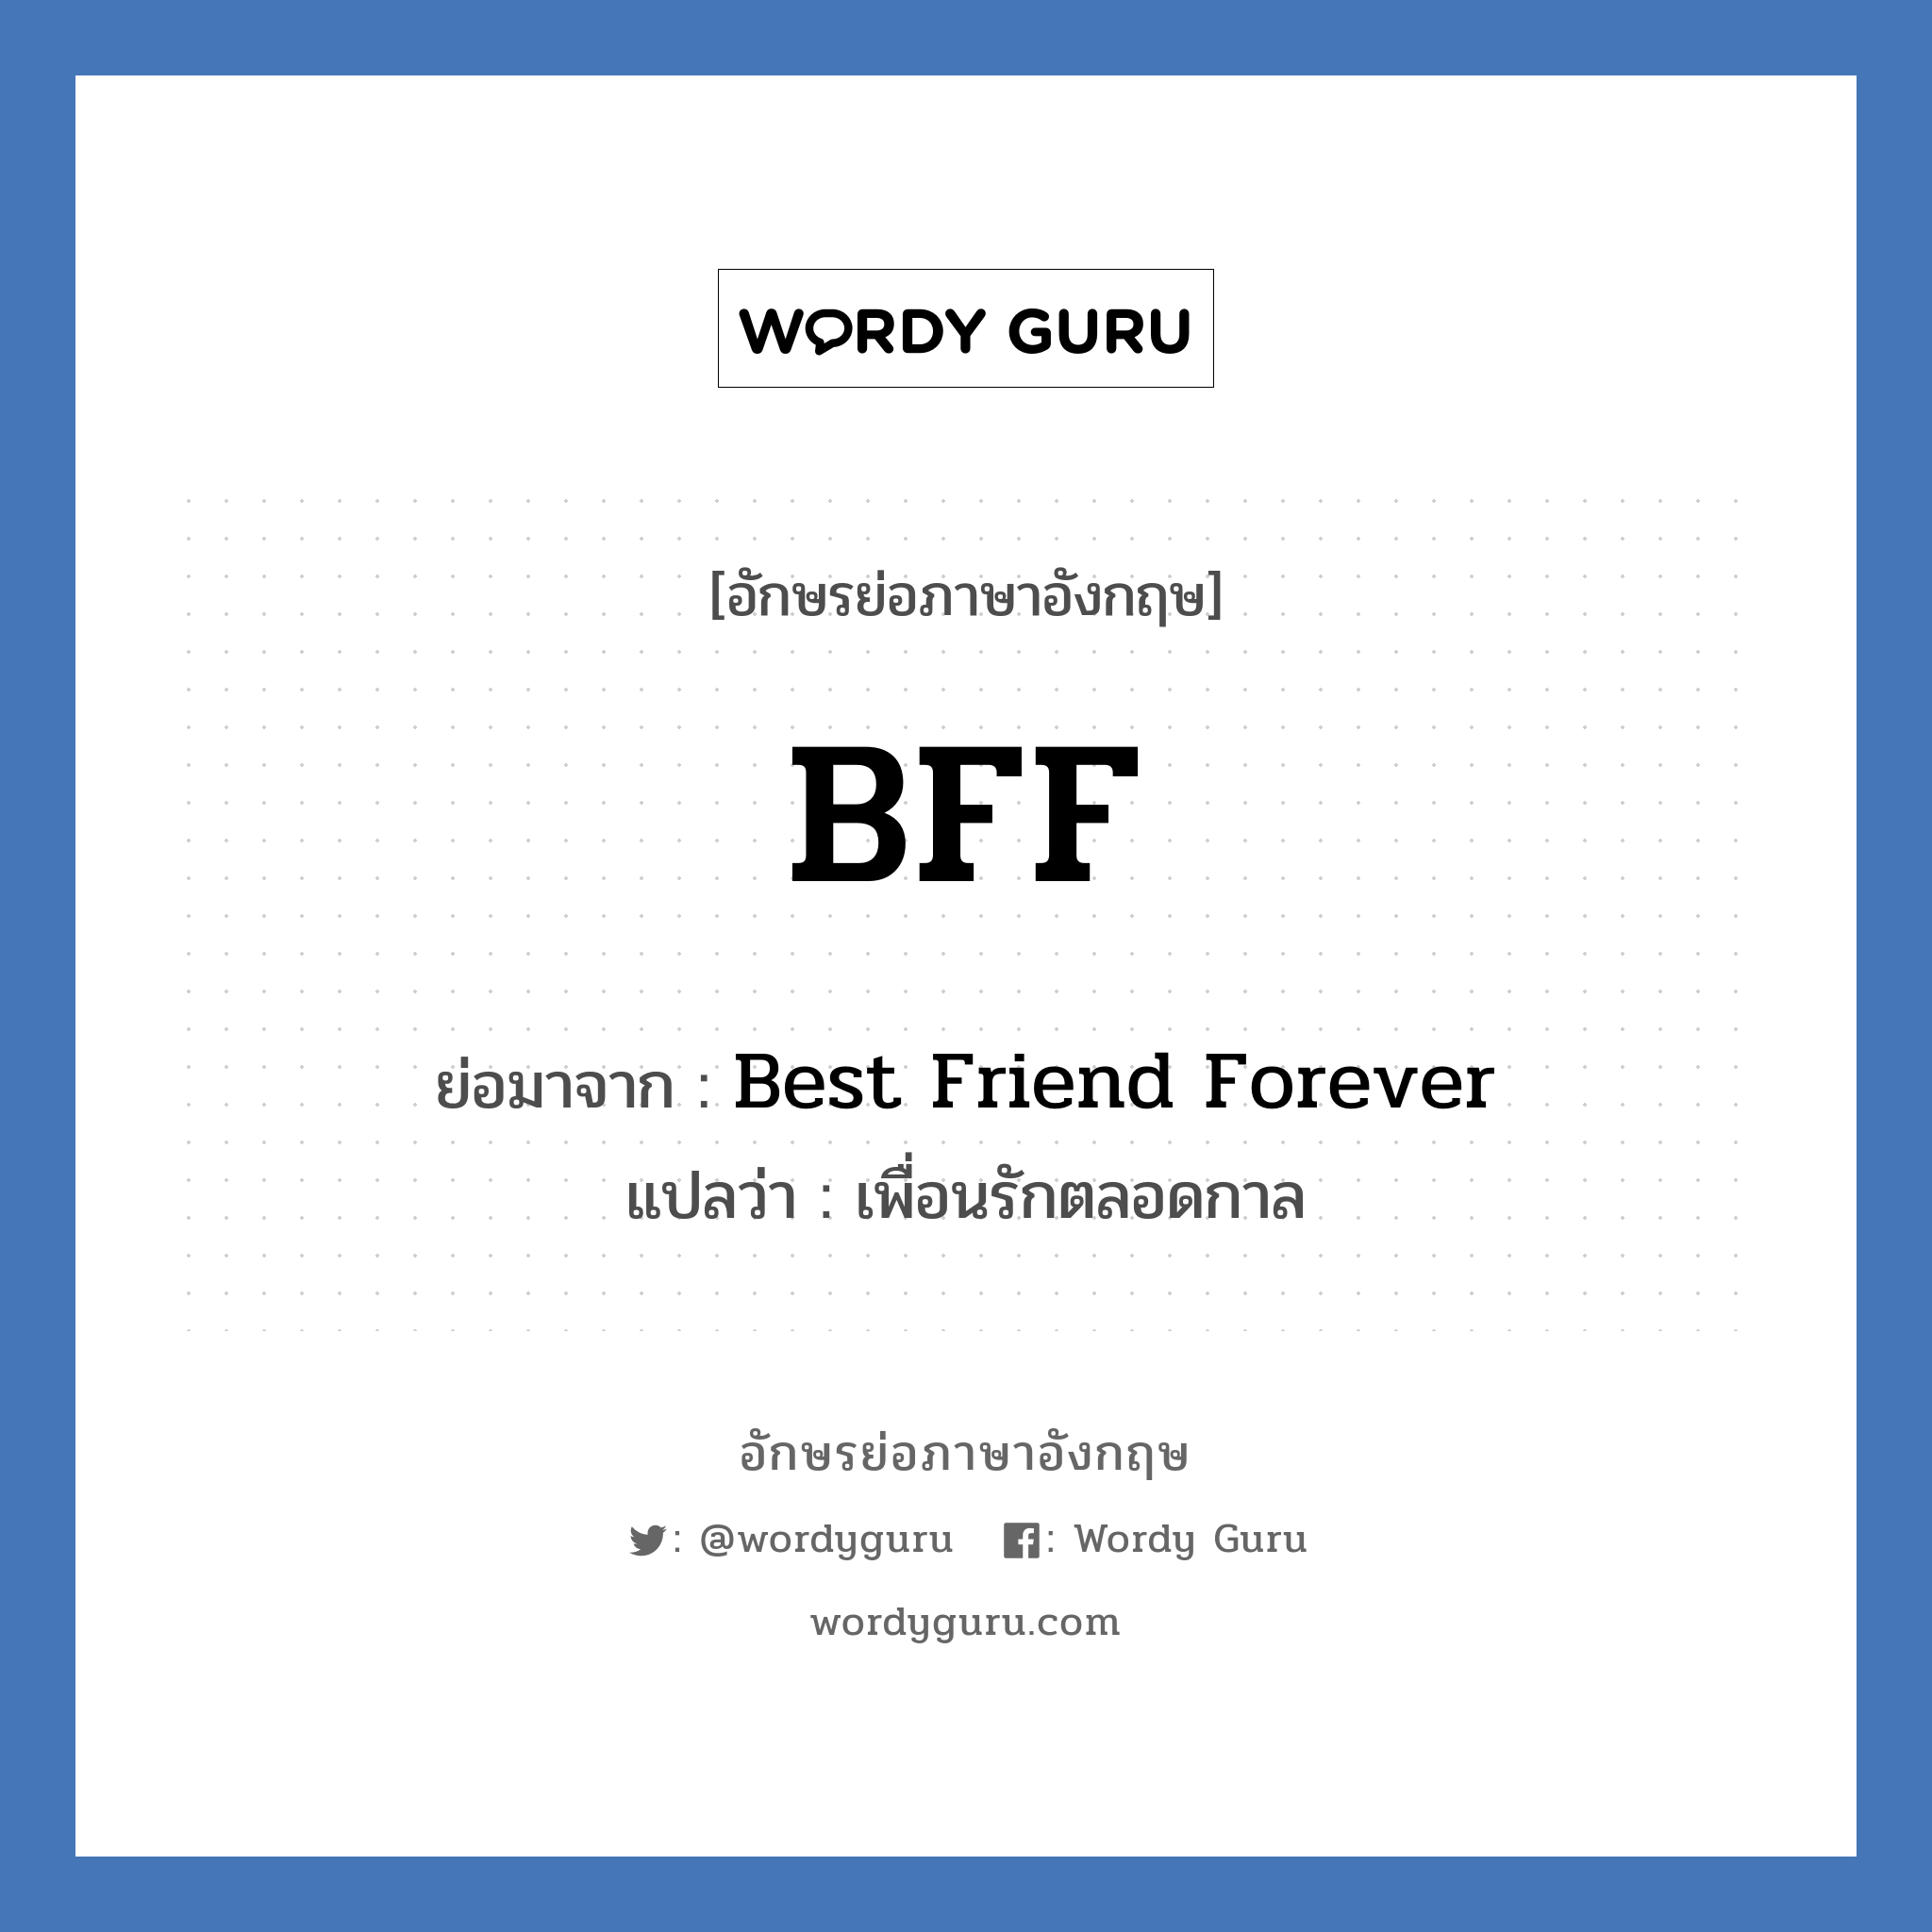 BFF ย่อมาจาก? แปลว่า?, อักษรย่อภาษาอังกฤษ BFF ย่อมาจาก Best Friend Forever แปลว่า เพื่อนรักตลอดกาล